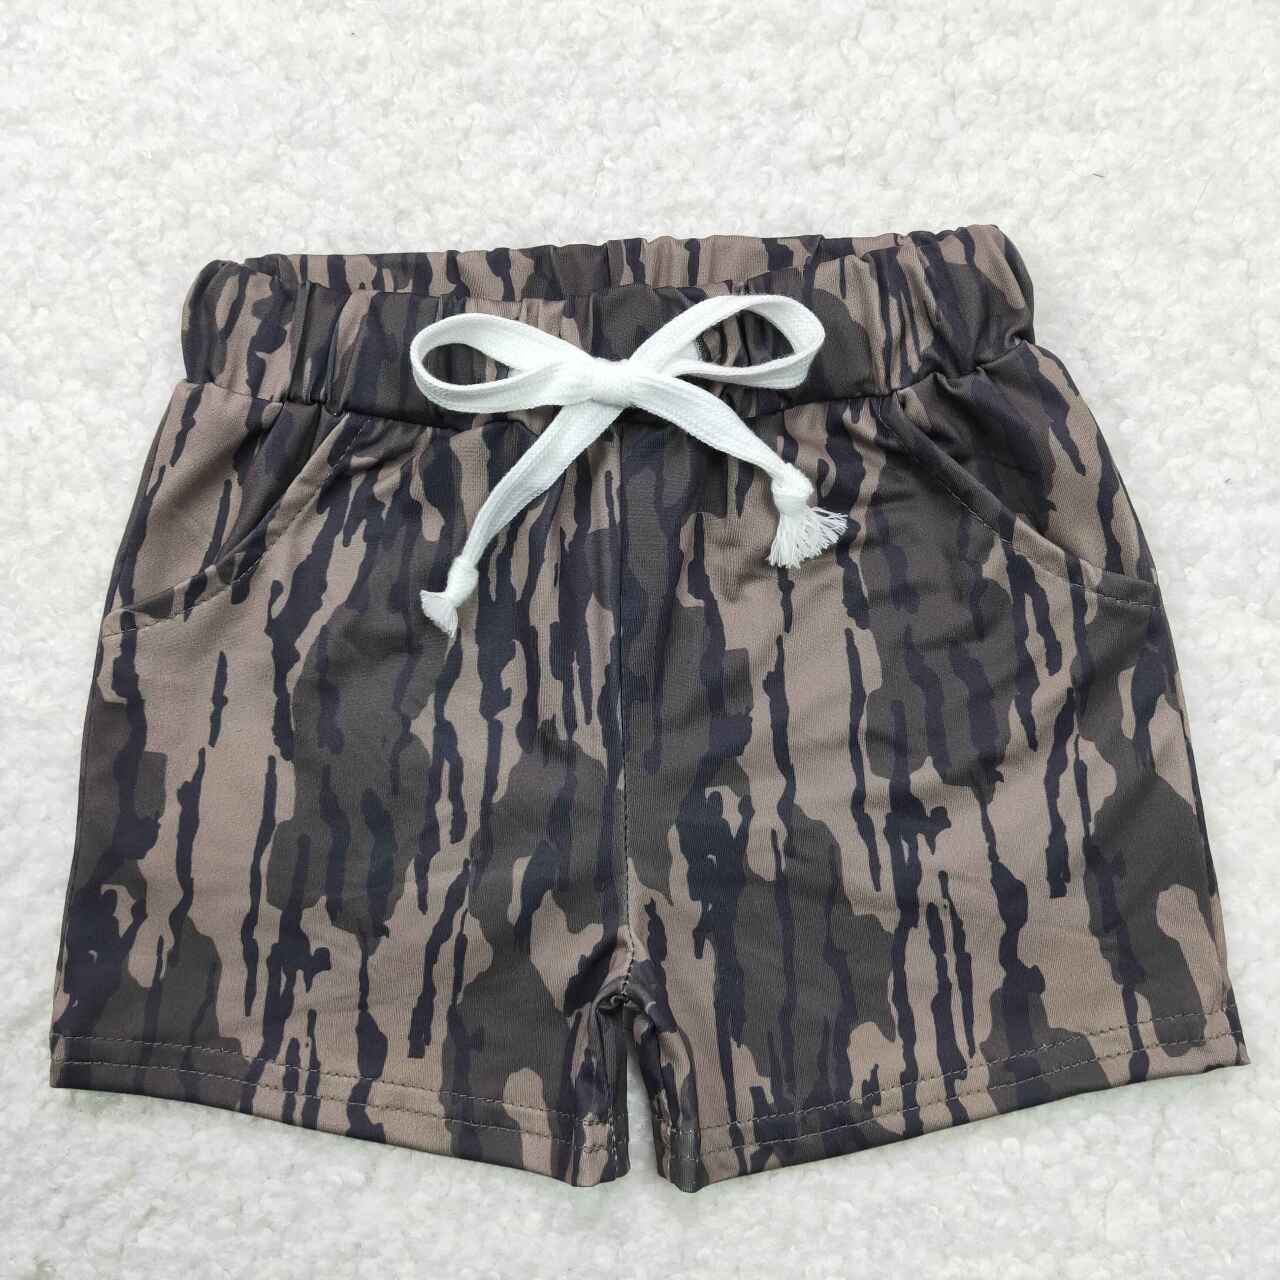 BSSO0609 Yellow Pocket Top Camo Shorts Boys Summer Clothes Set